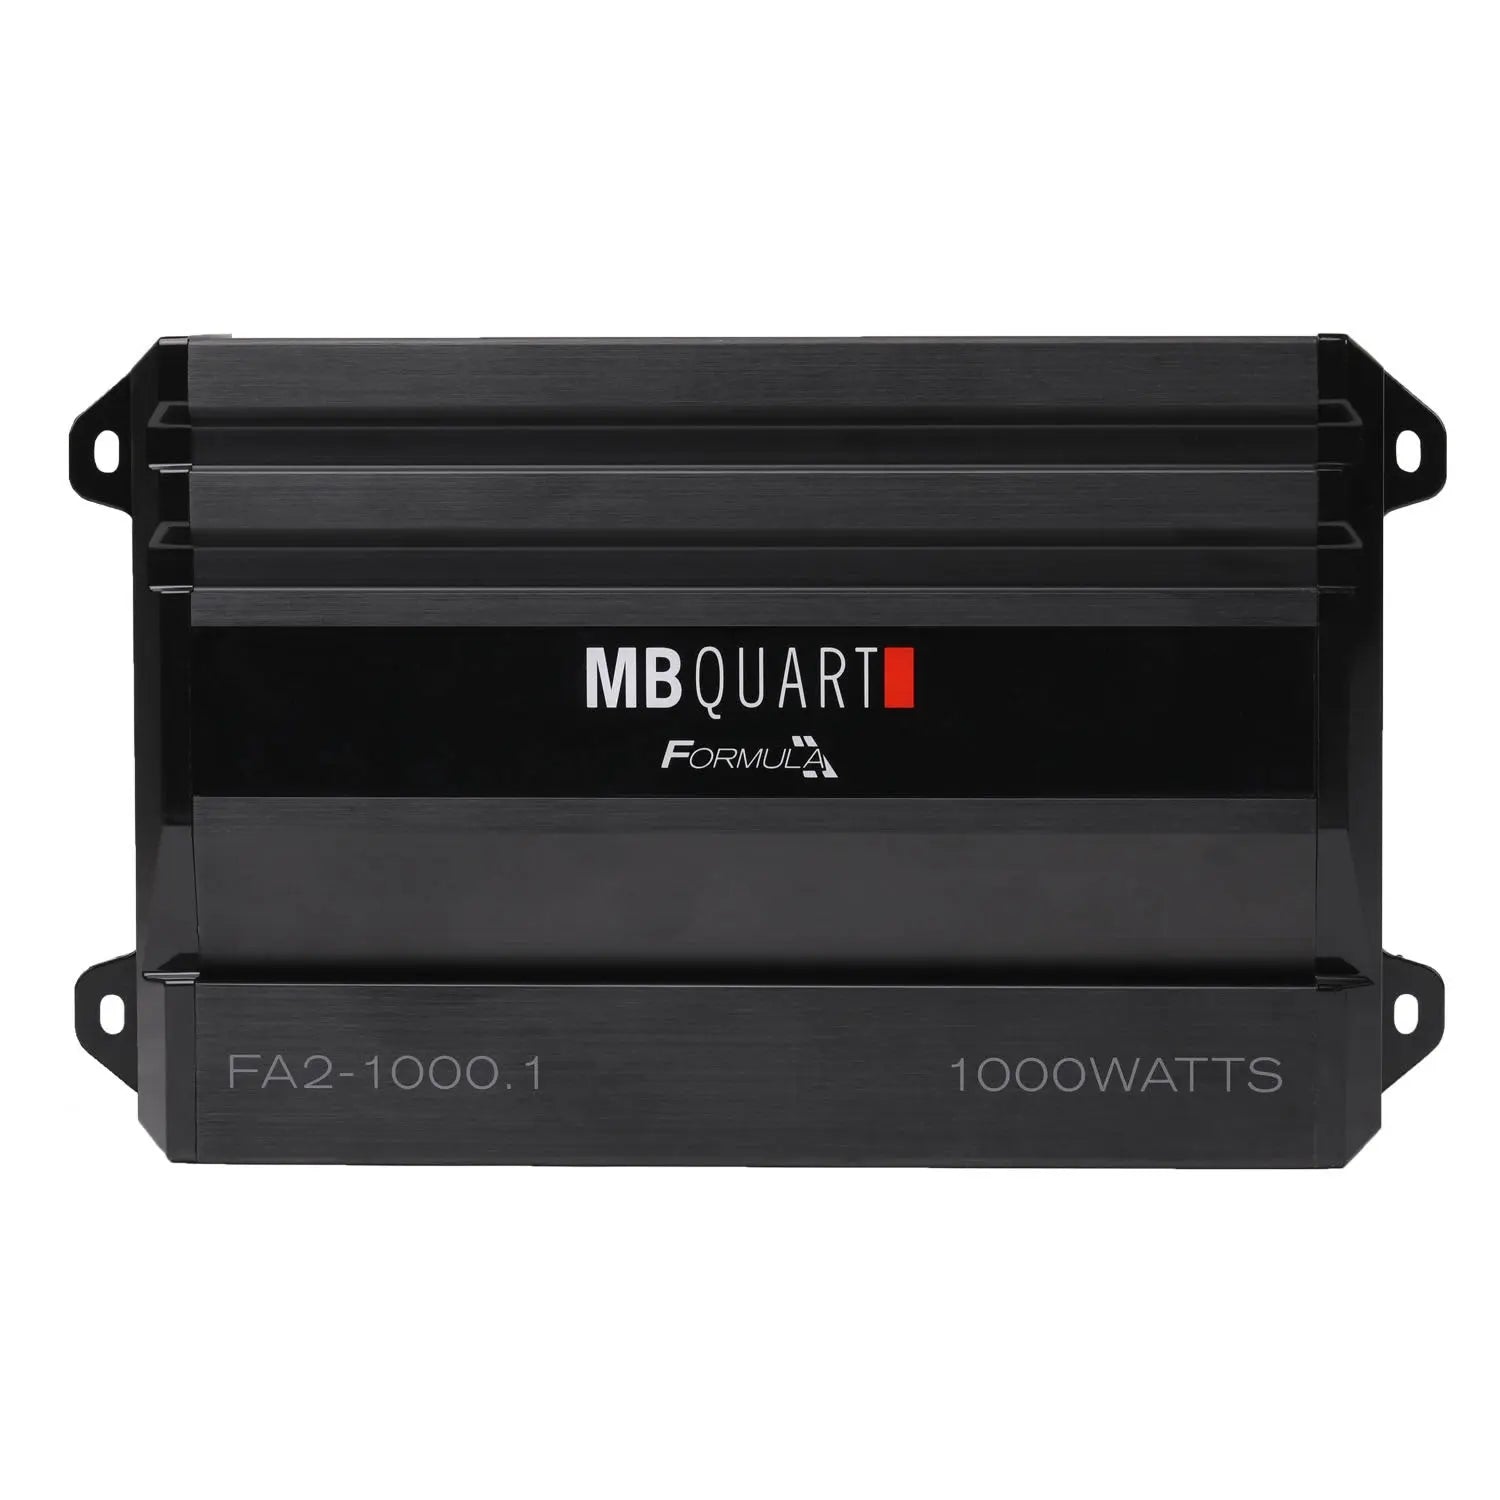 MB Quart FA2-1000.1 Formula Monoblock Amplifier - 1000W MB Quart